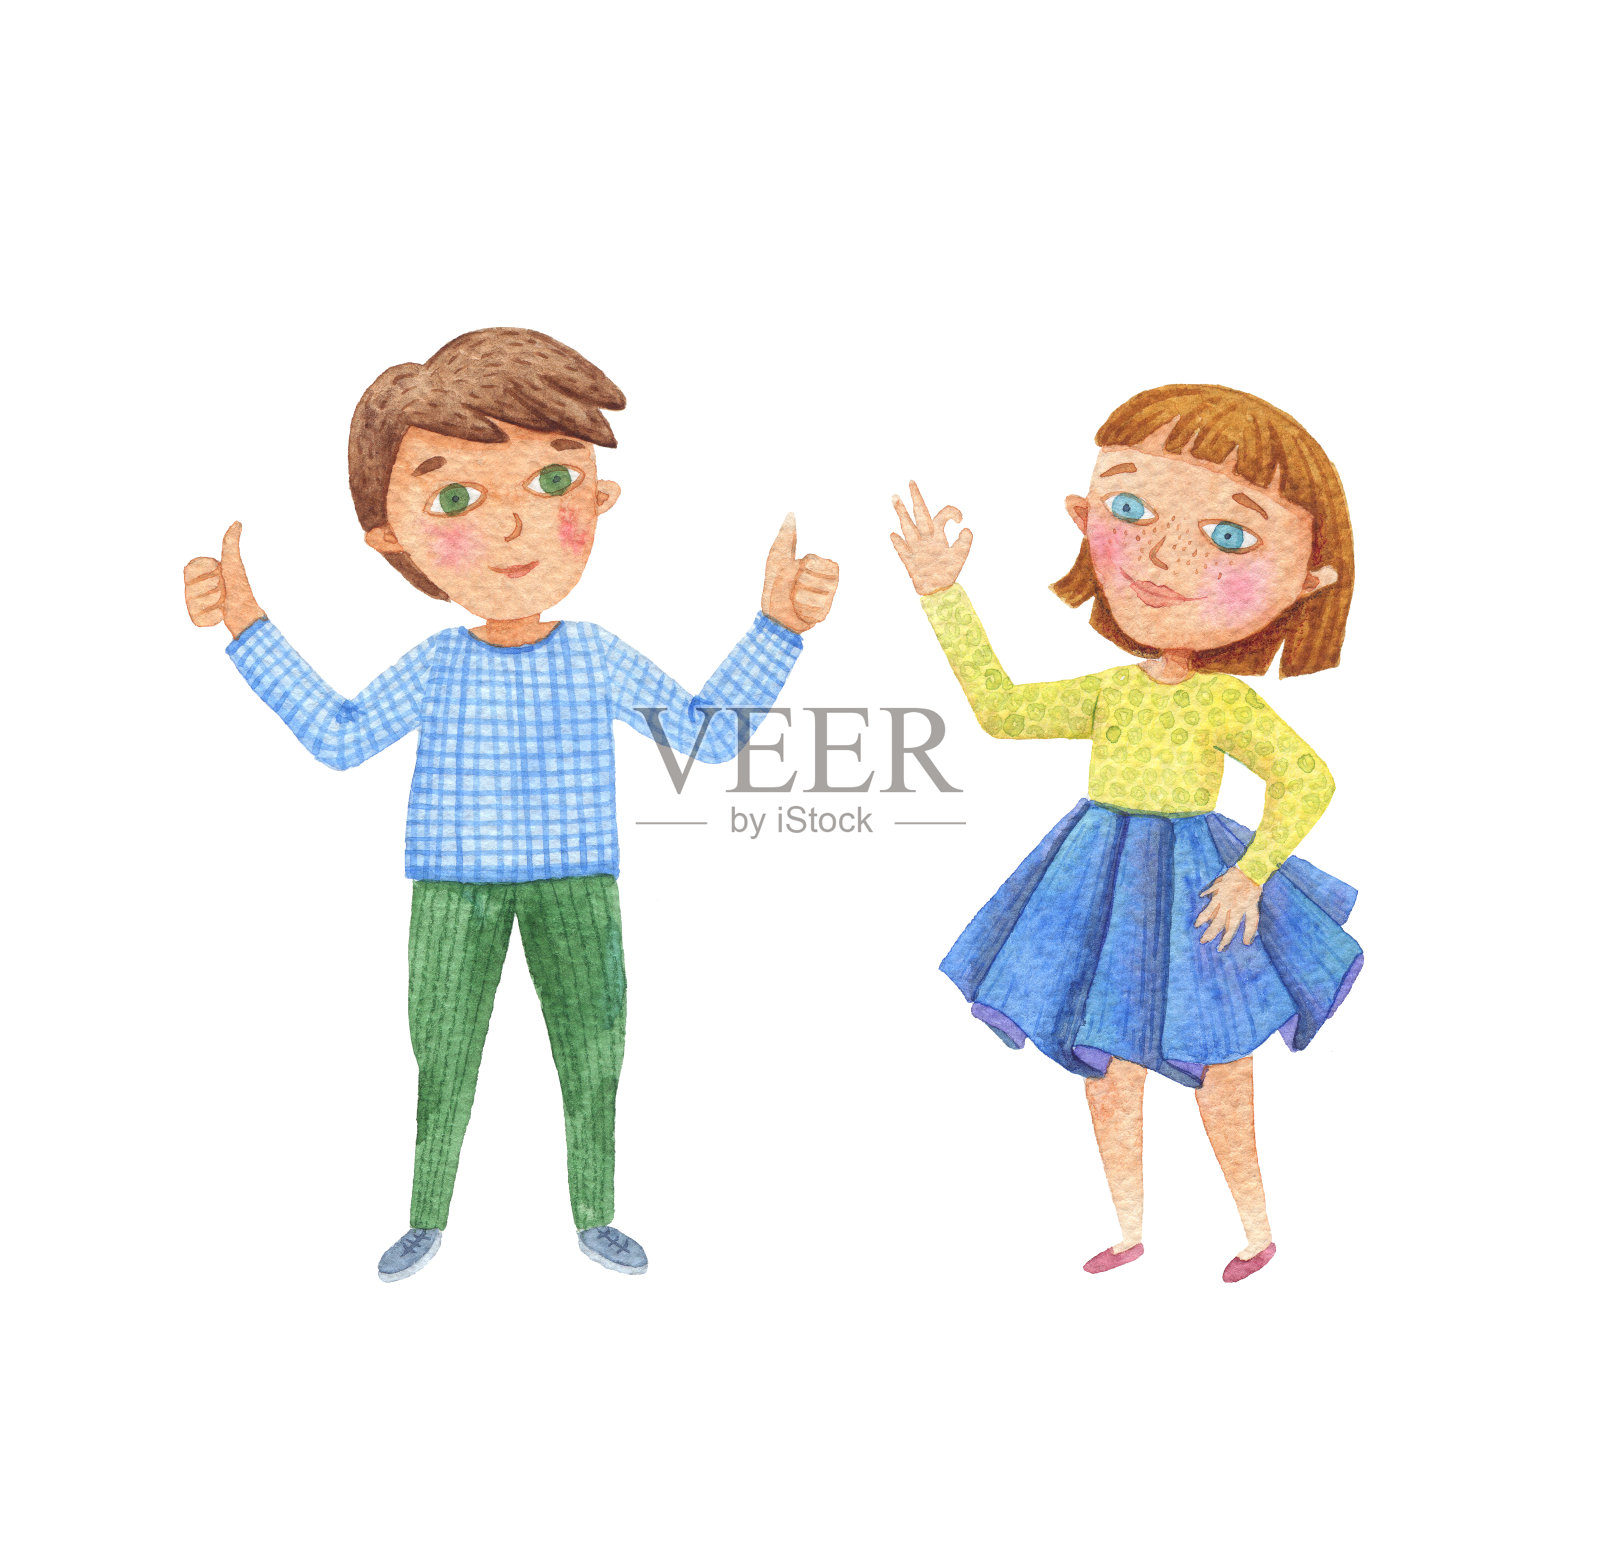 一个快乐的男孩和女孩的水彩画。女孩做了一个OK的手势。男孩竖起大拇指，做了一个超级手势。插画图片素材